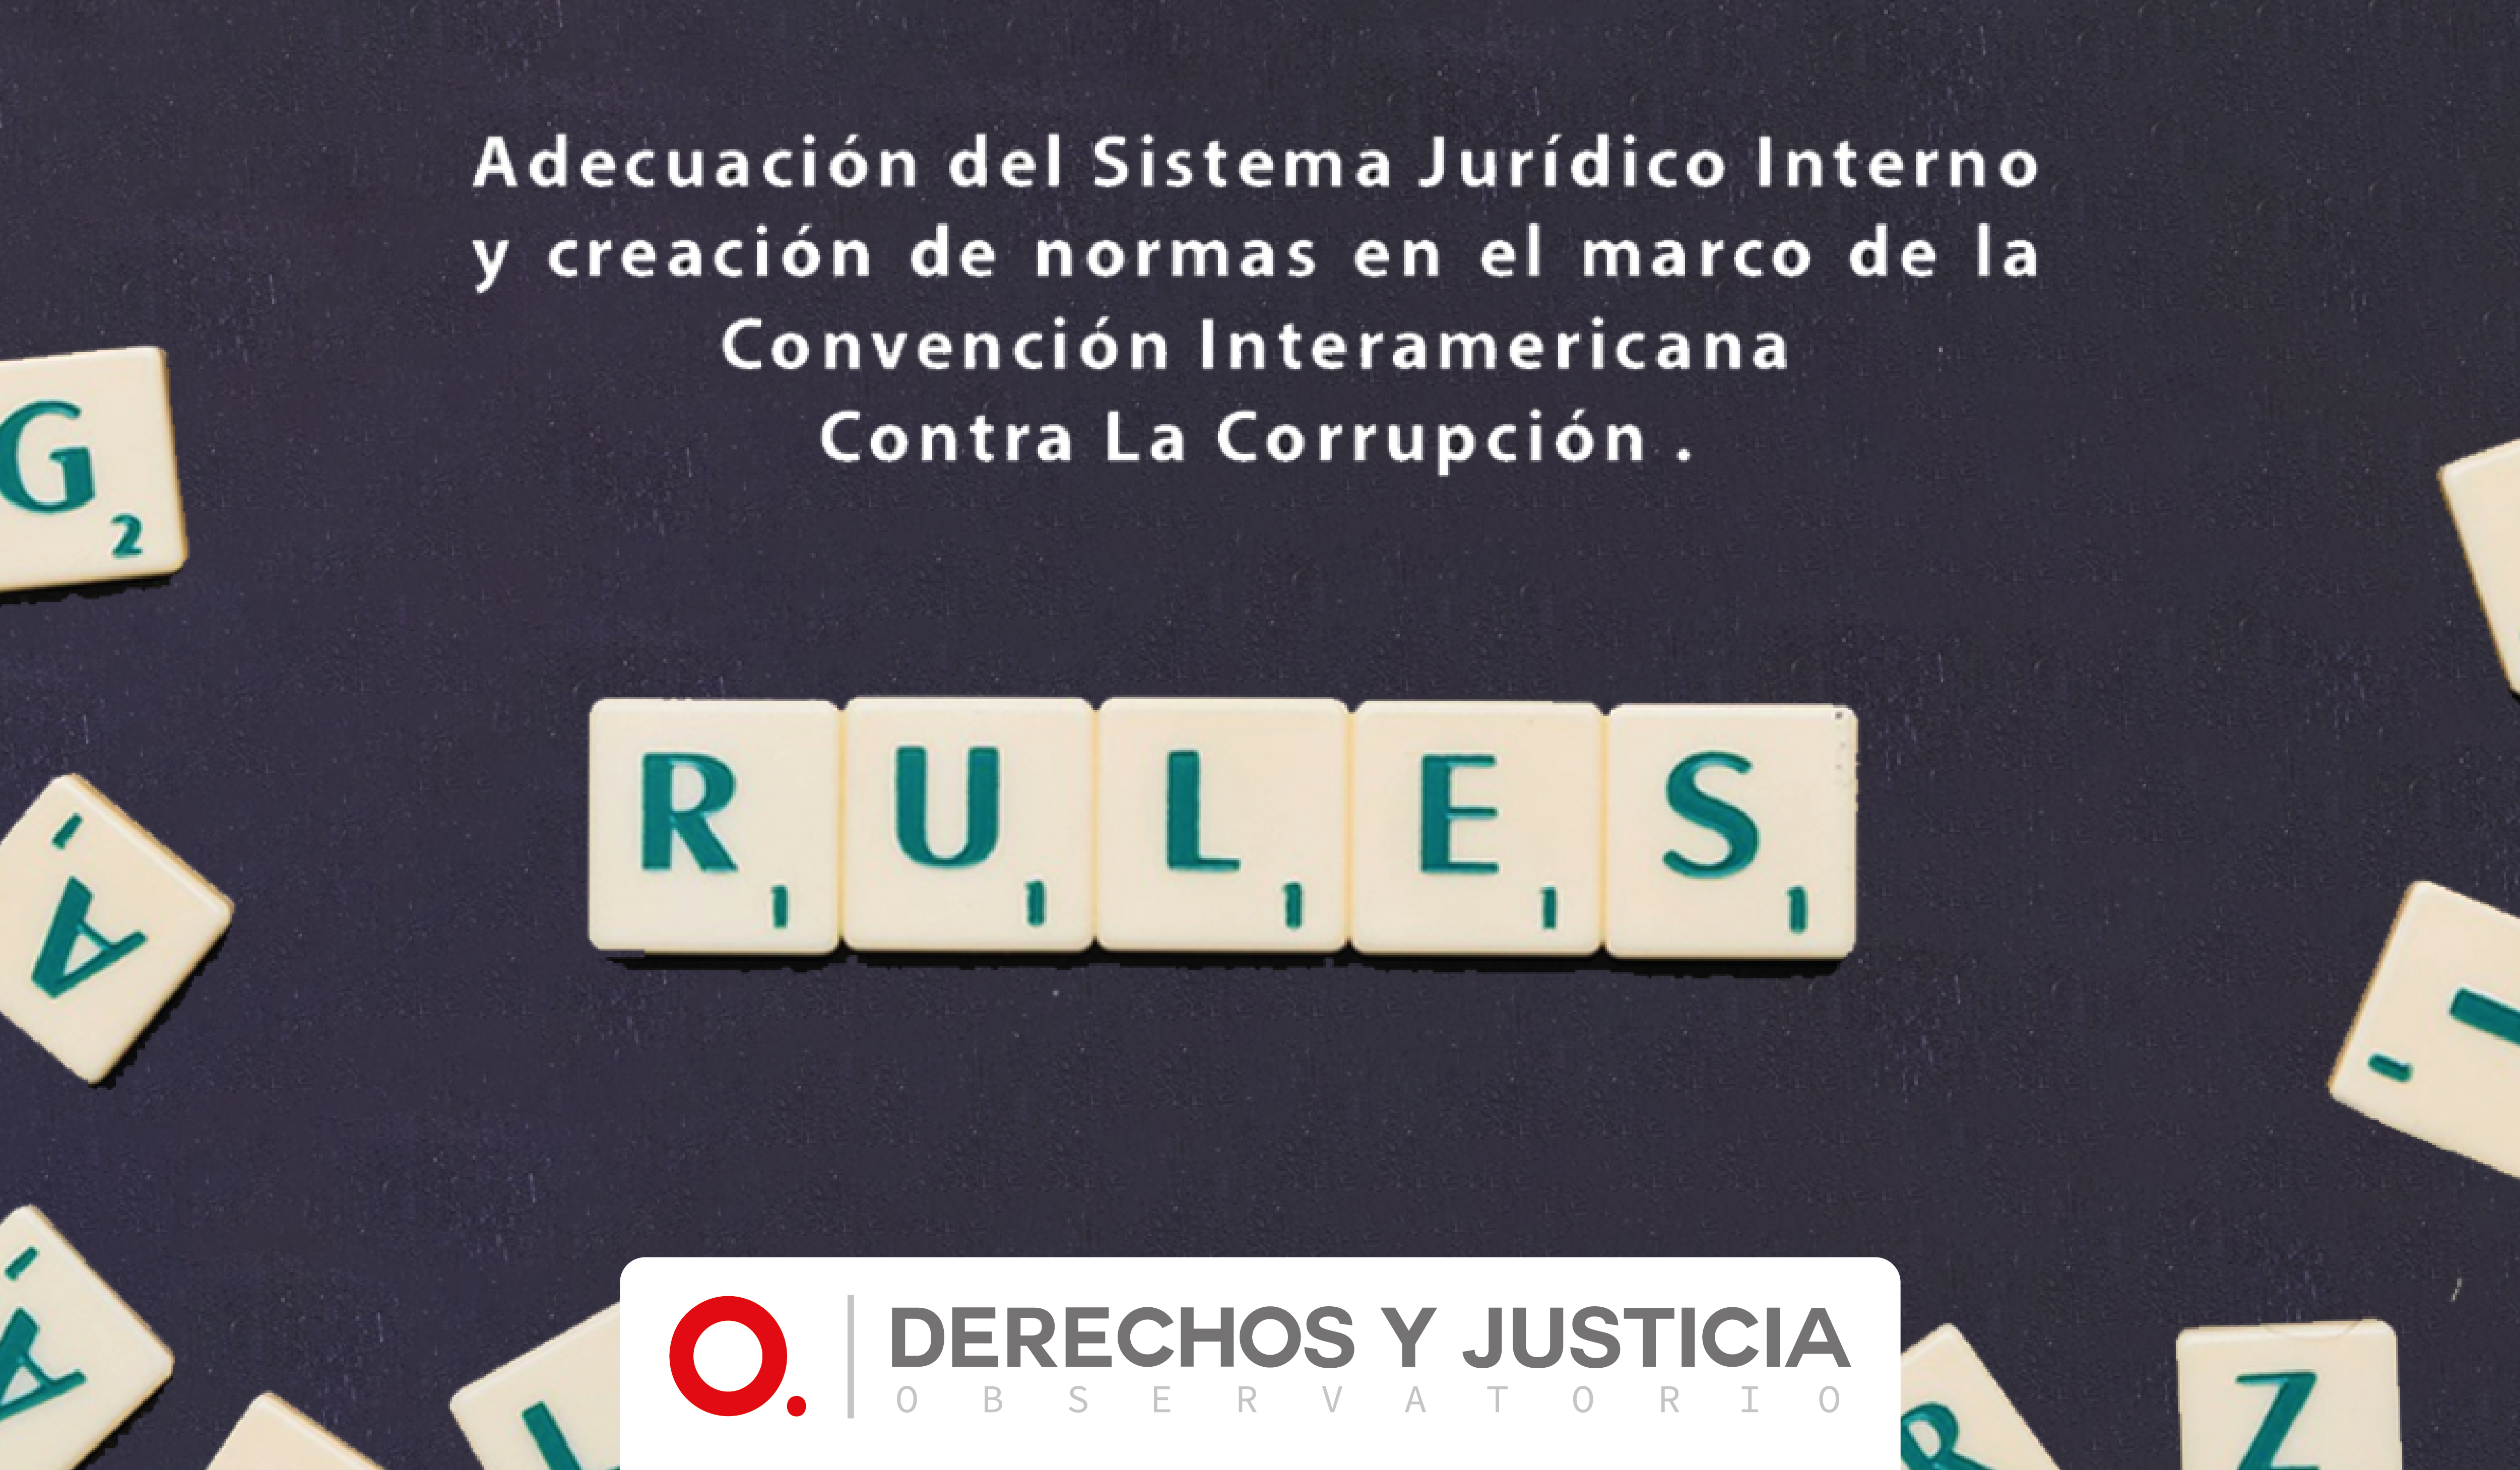 Adecuación del Sistema Jurídico Interno y creación de normas en el marco de la Convención Interamericana contra la corrupción.